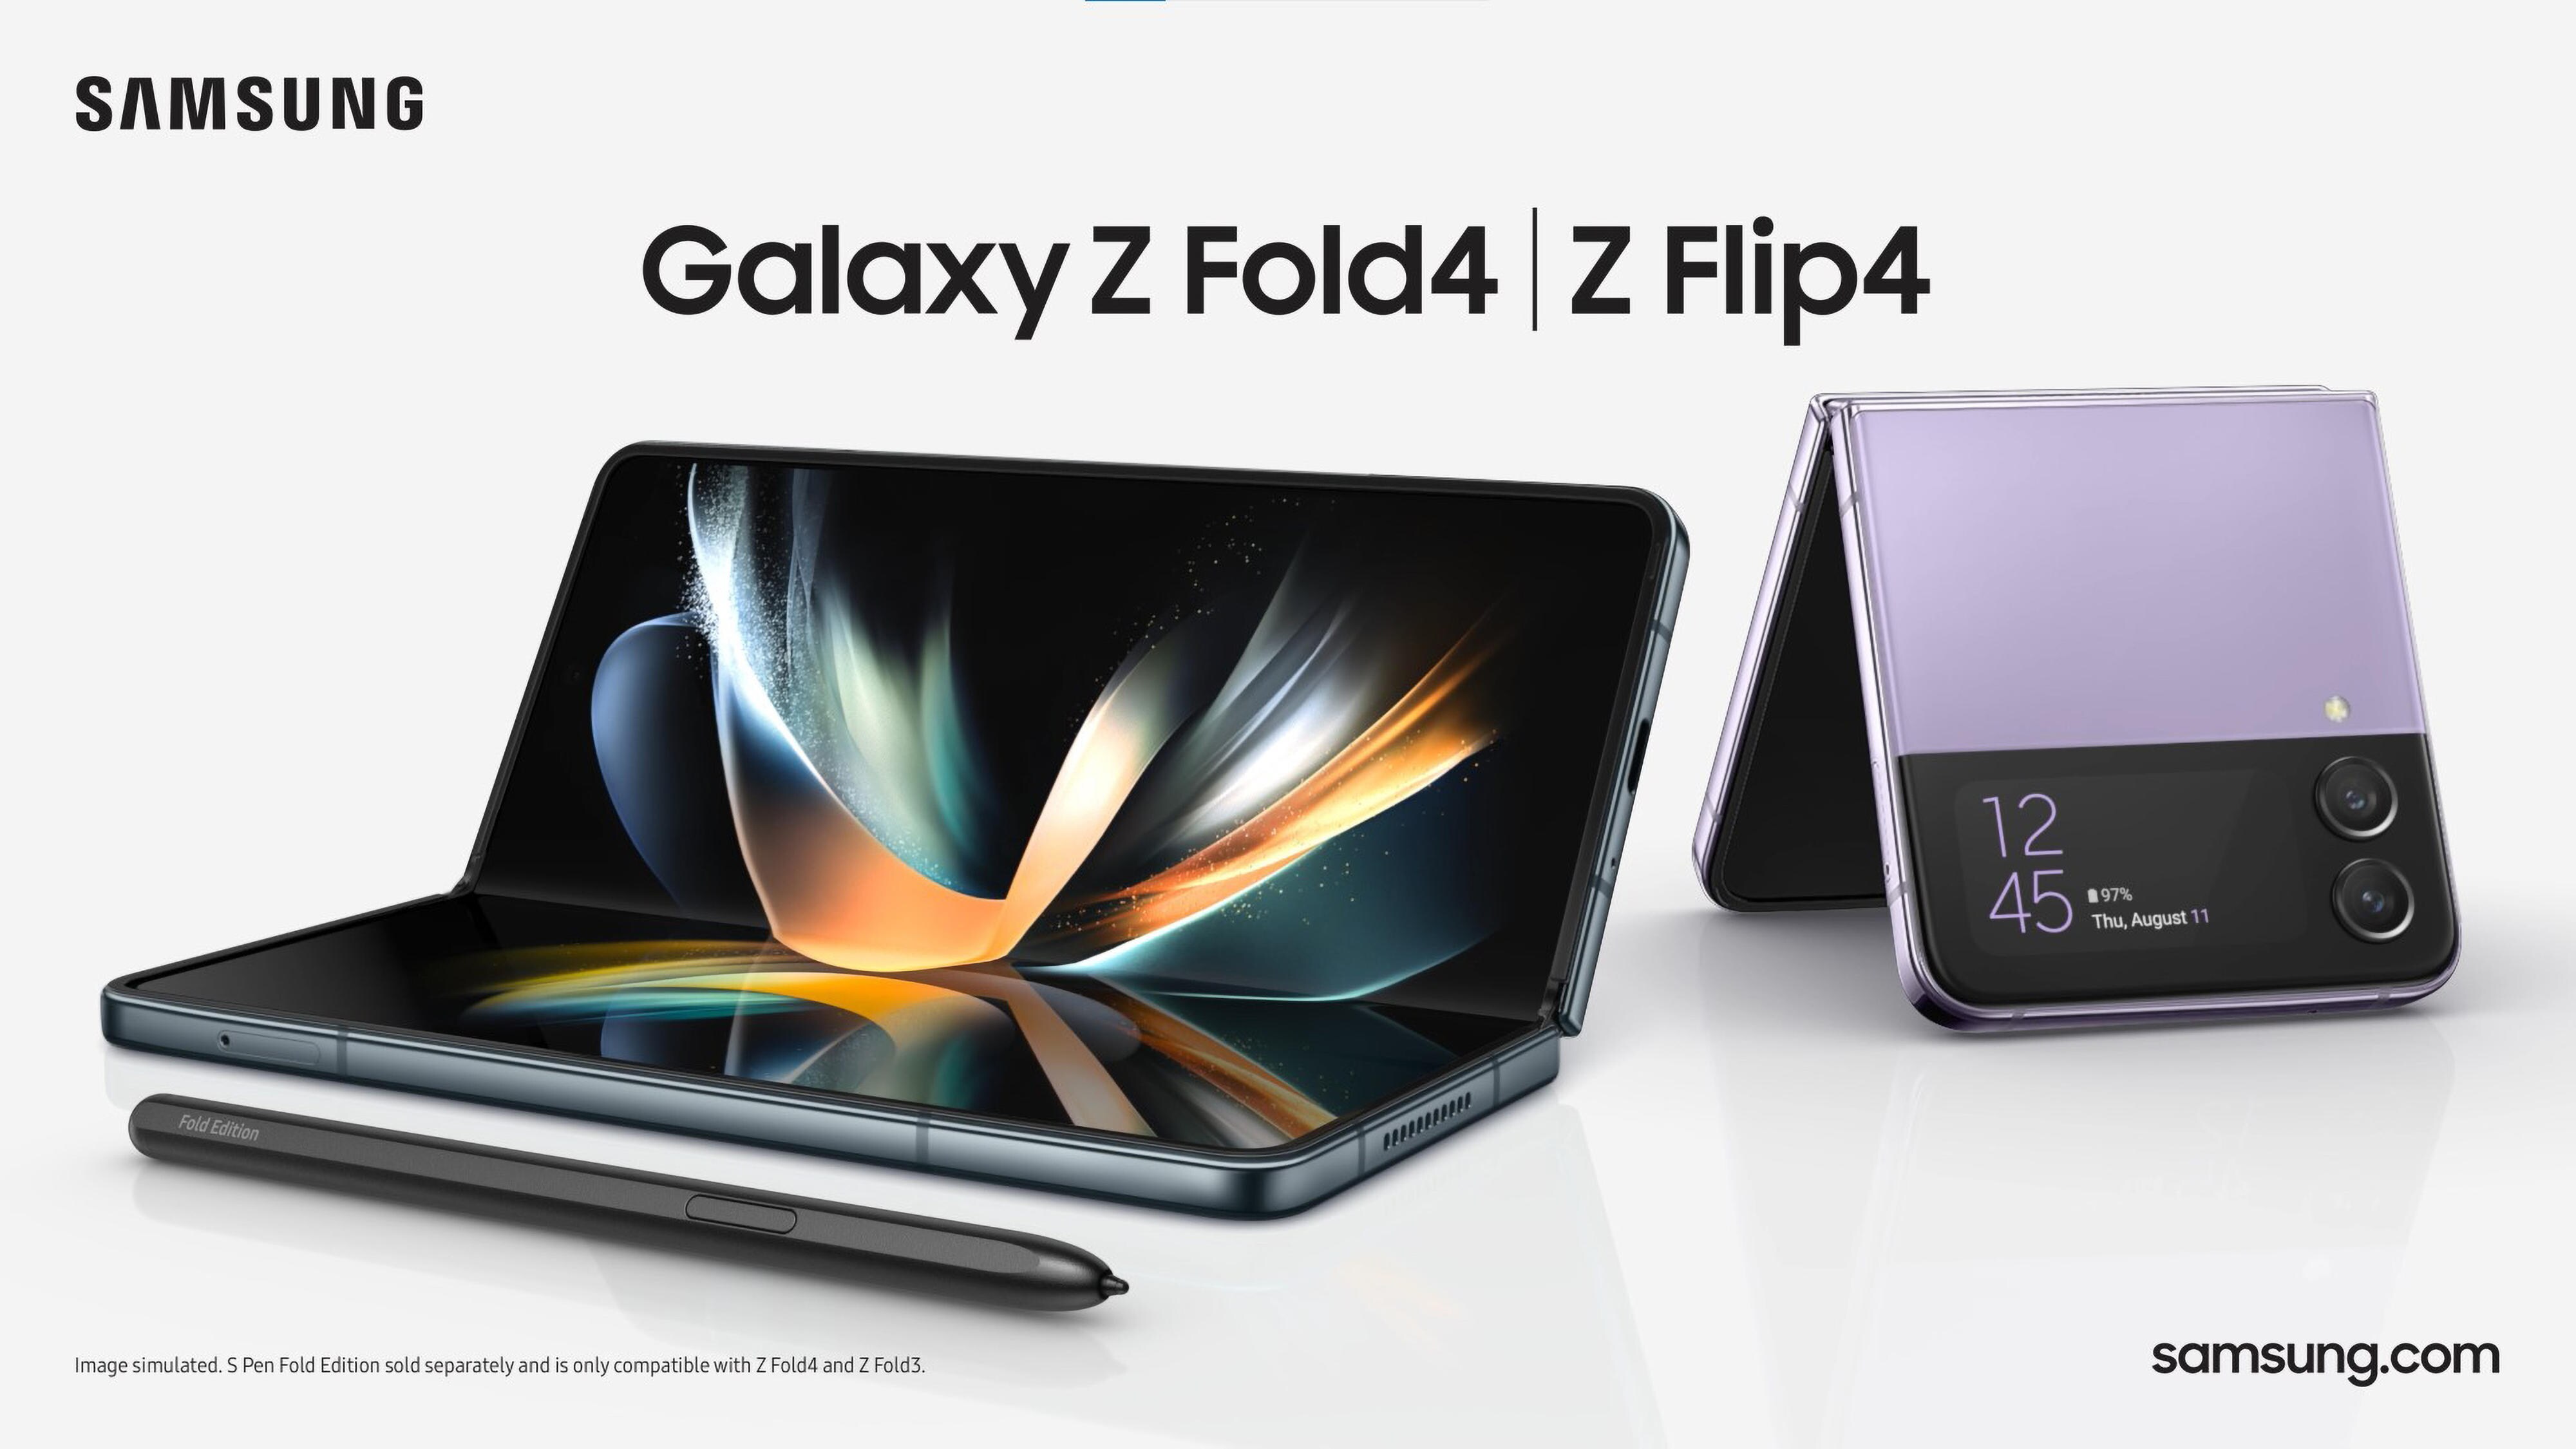 Samsung Galaxy Z Fold 4 and Z Flip 4